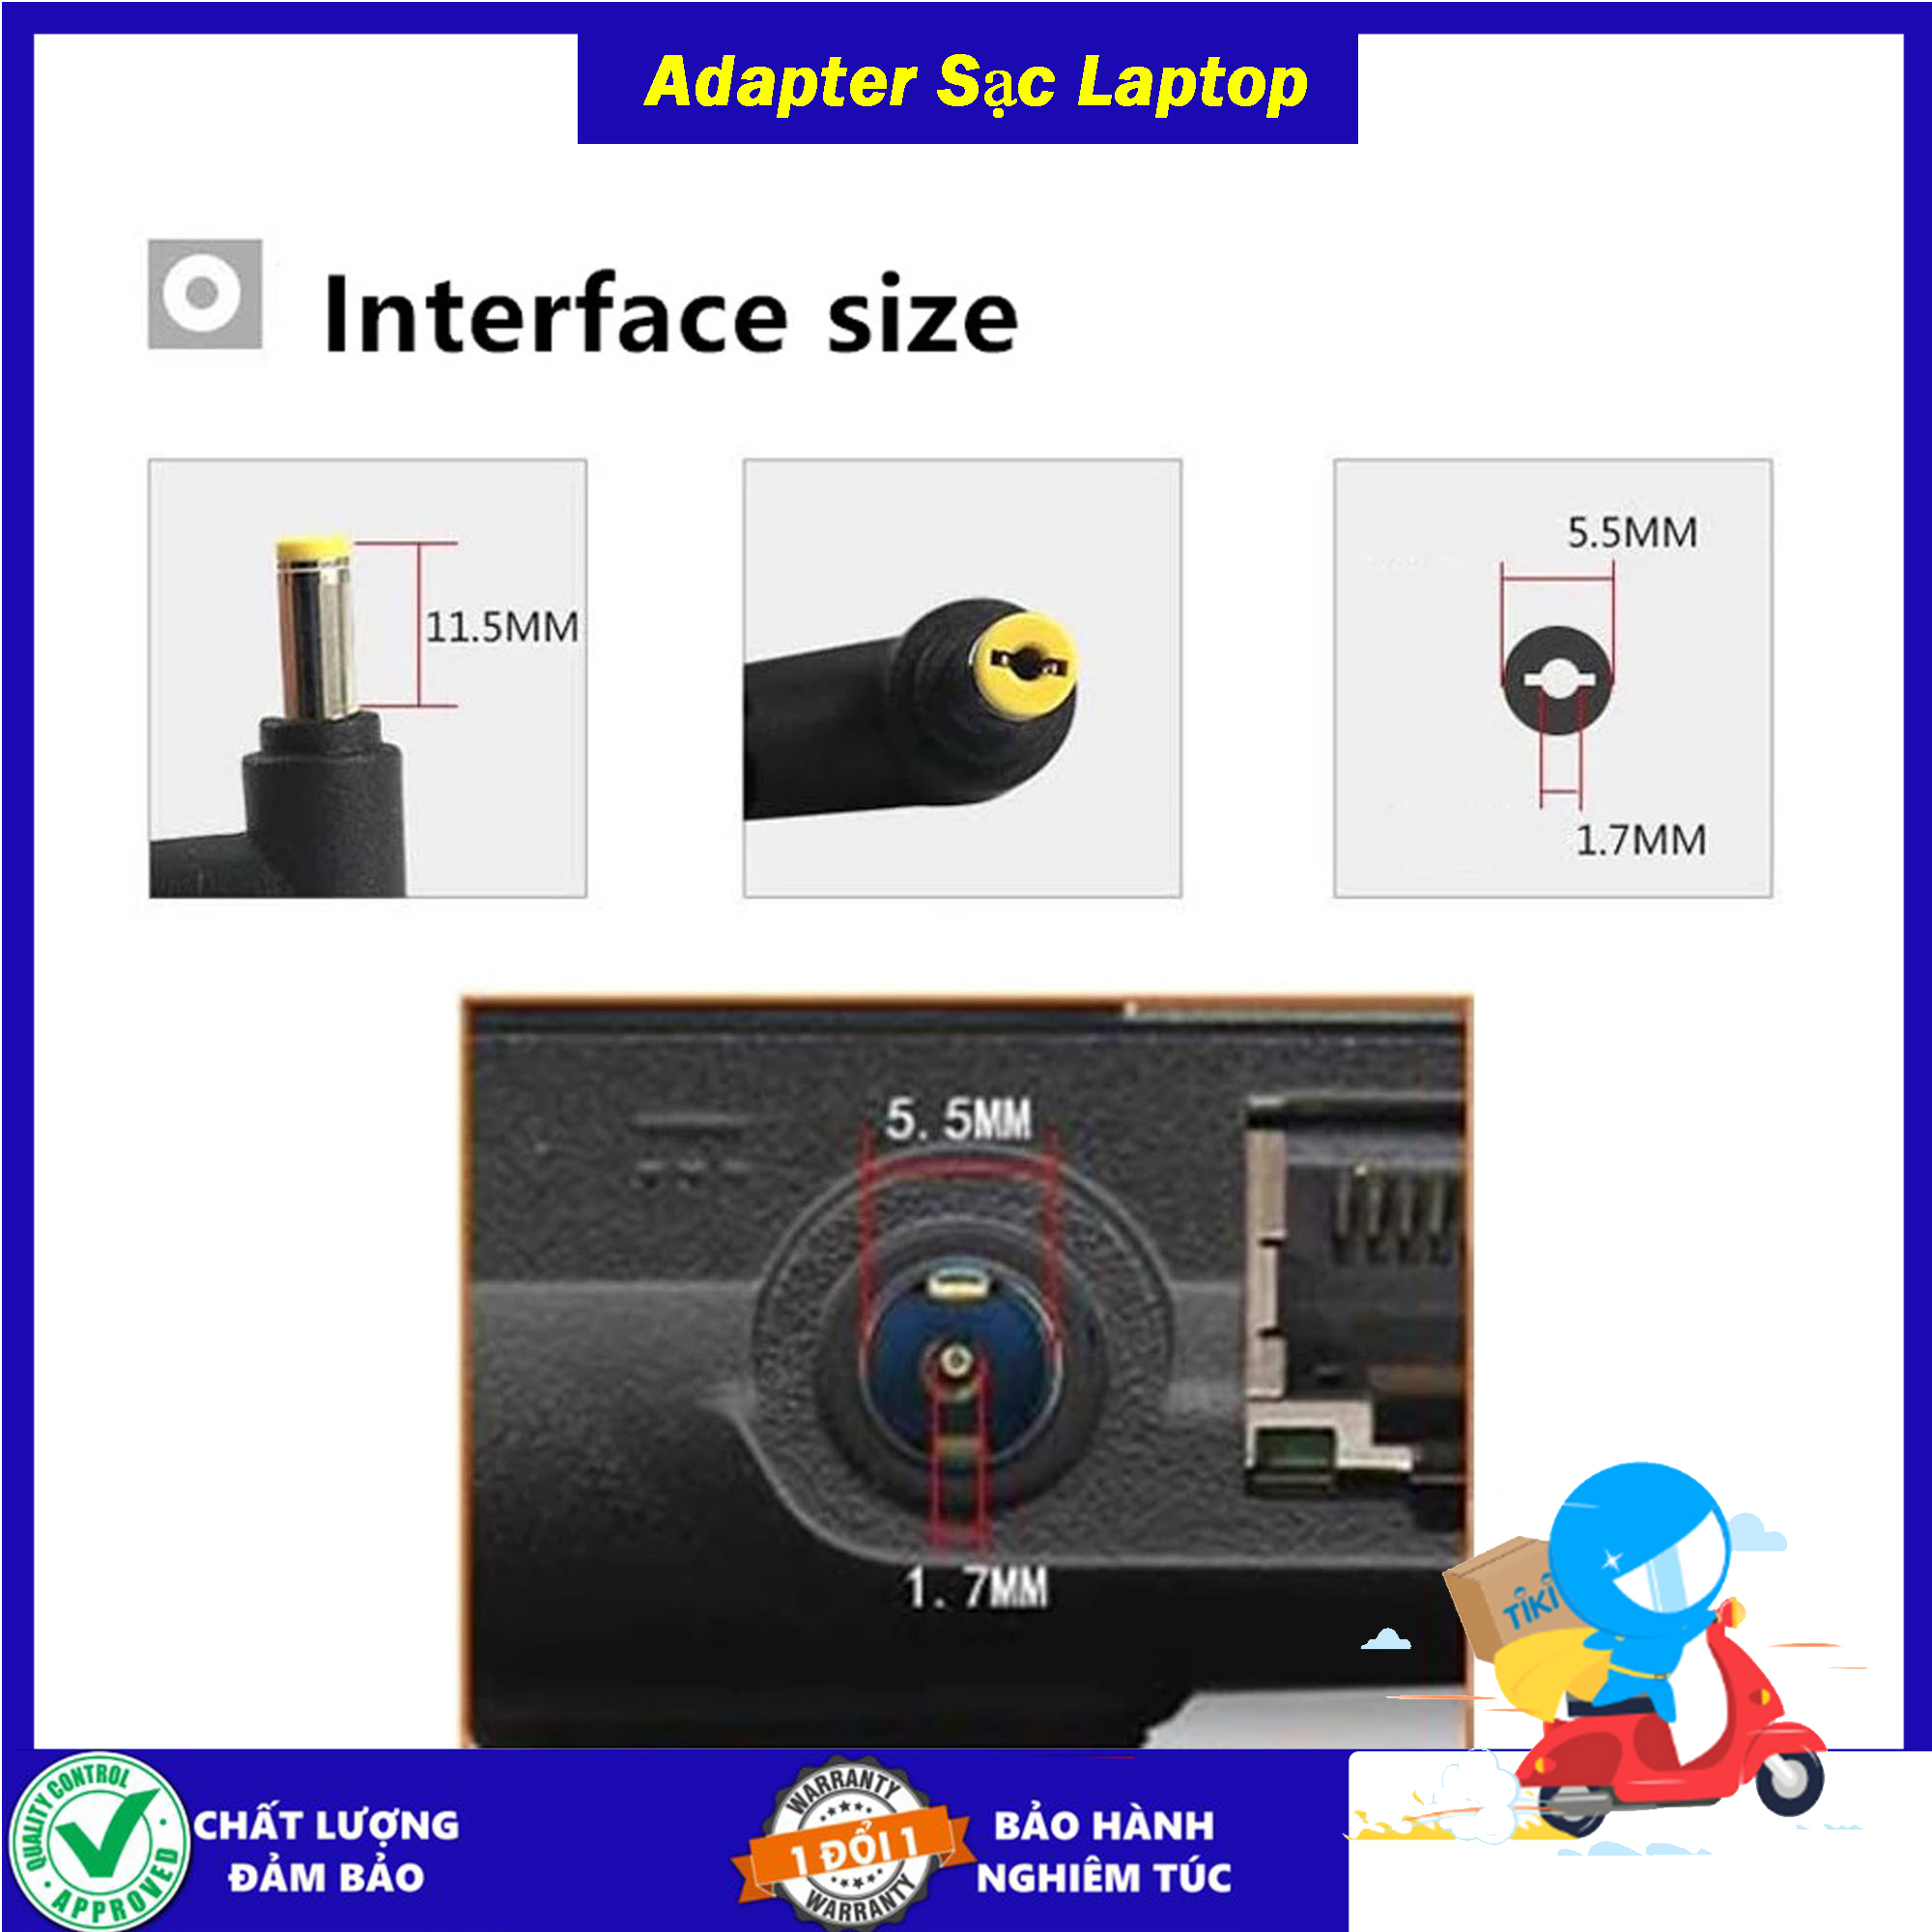 Sạc cho Laptop Acer 19V 2.37a 3.42a - công suất 45w/65w - Chân thường 5.5mm x 1.7mm - Tặng kèm dây nguồn - Hàng Nhập Khẩu - Sản phẩm mới 100% New Seal